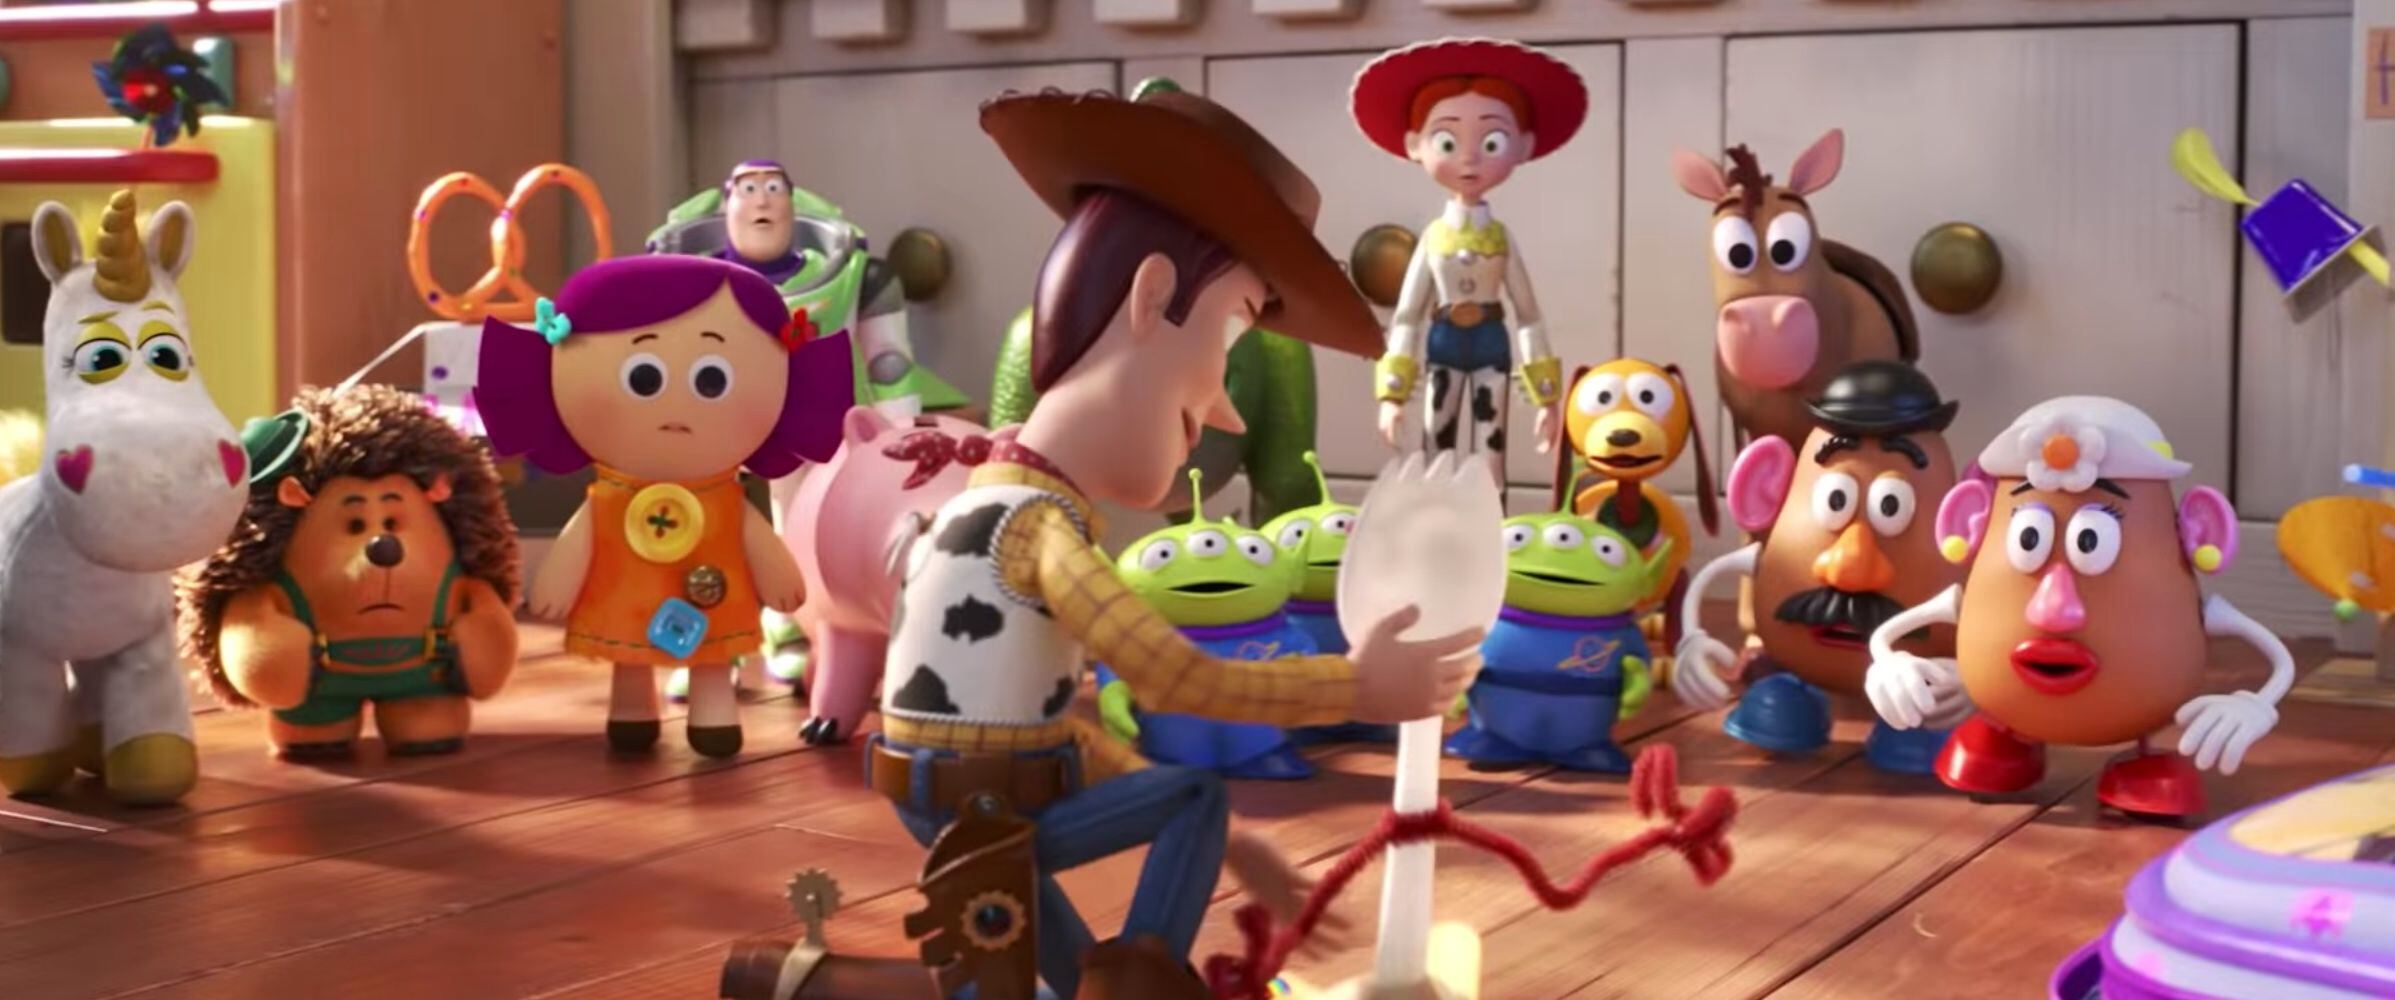 Toy Story 4 fue la última película de esta saga de Disney Pixar. El filme introdujo al personaje Forky. Foto: Archivo